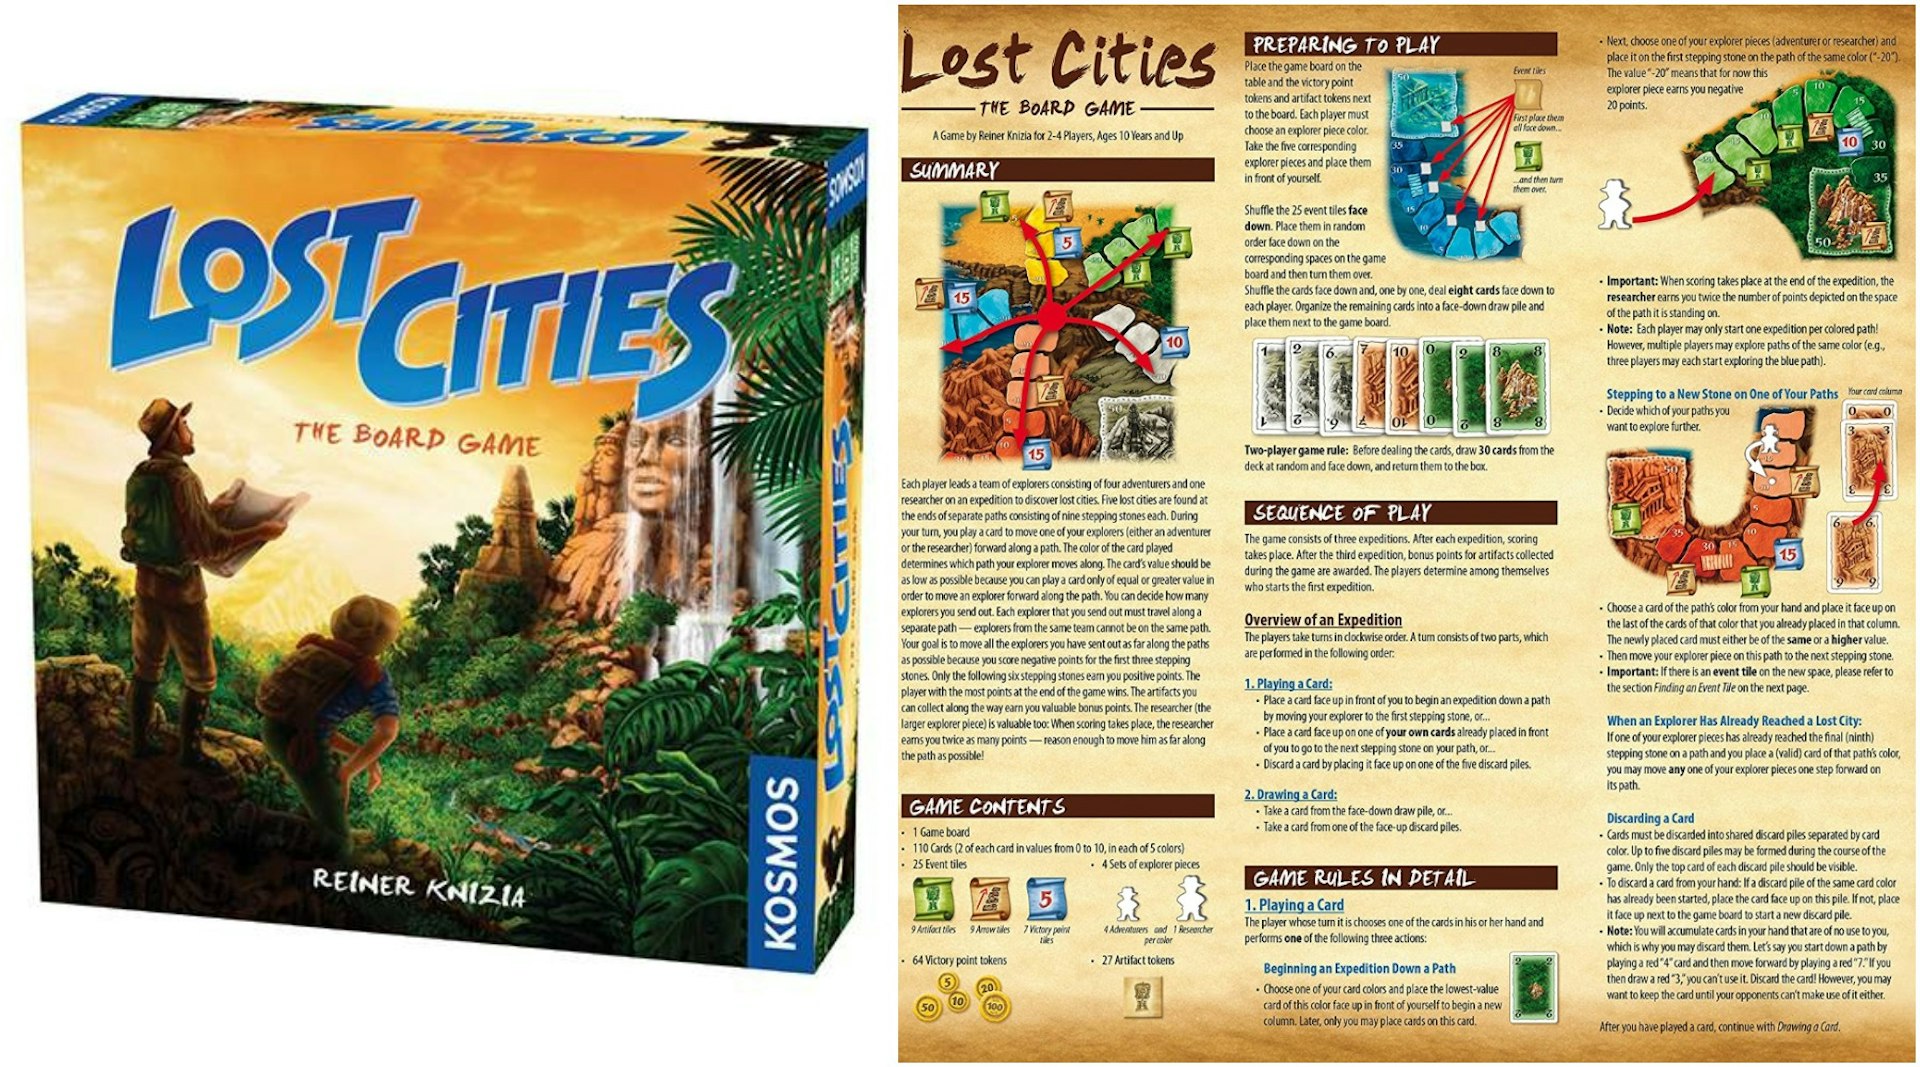 Lost Cities (1).jpg